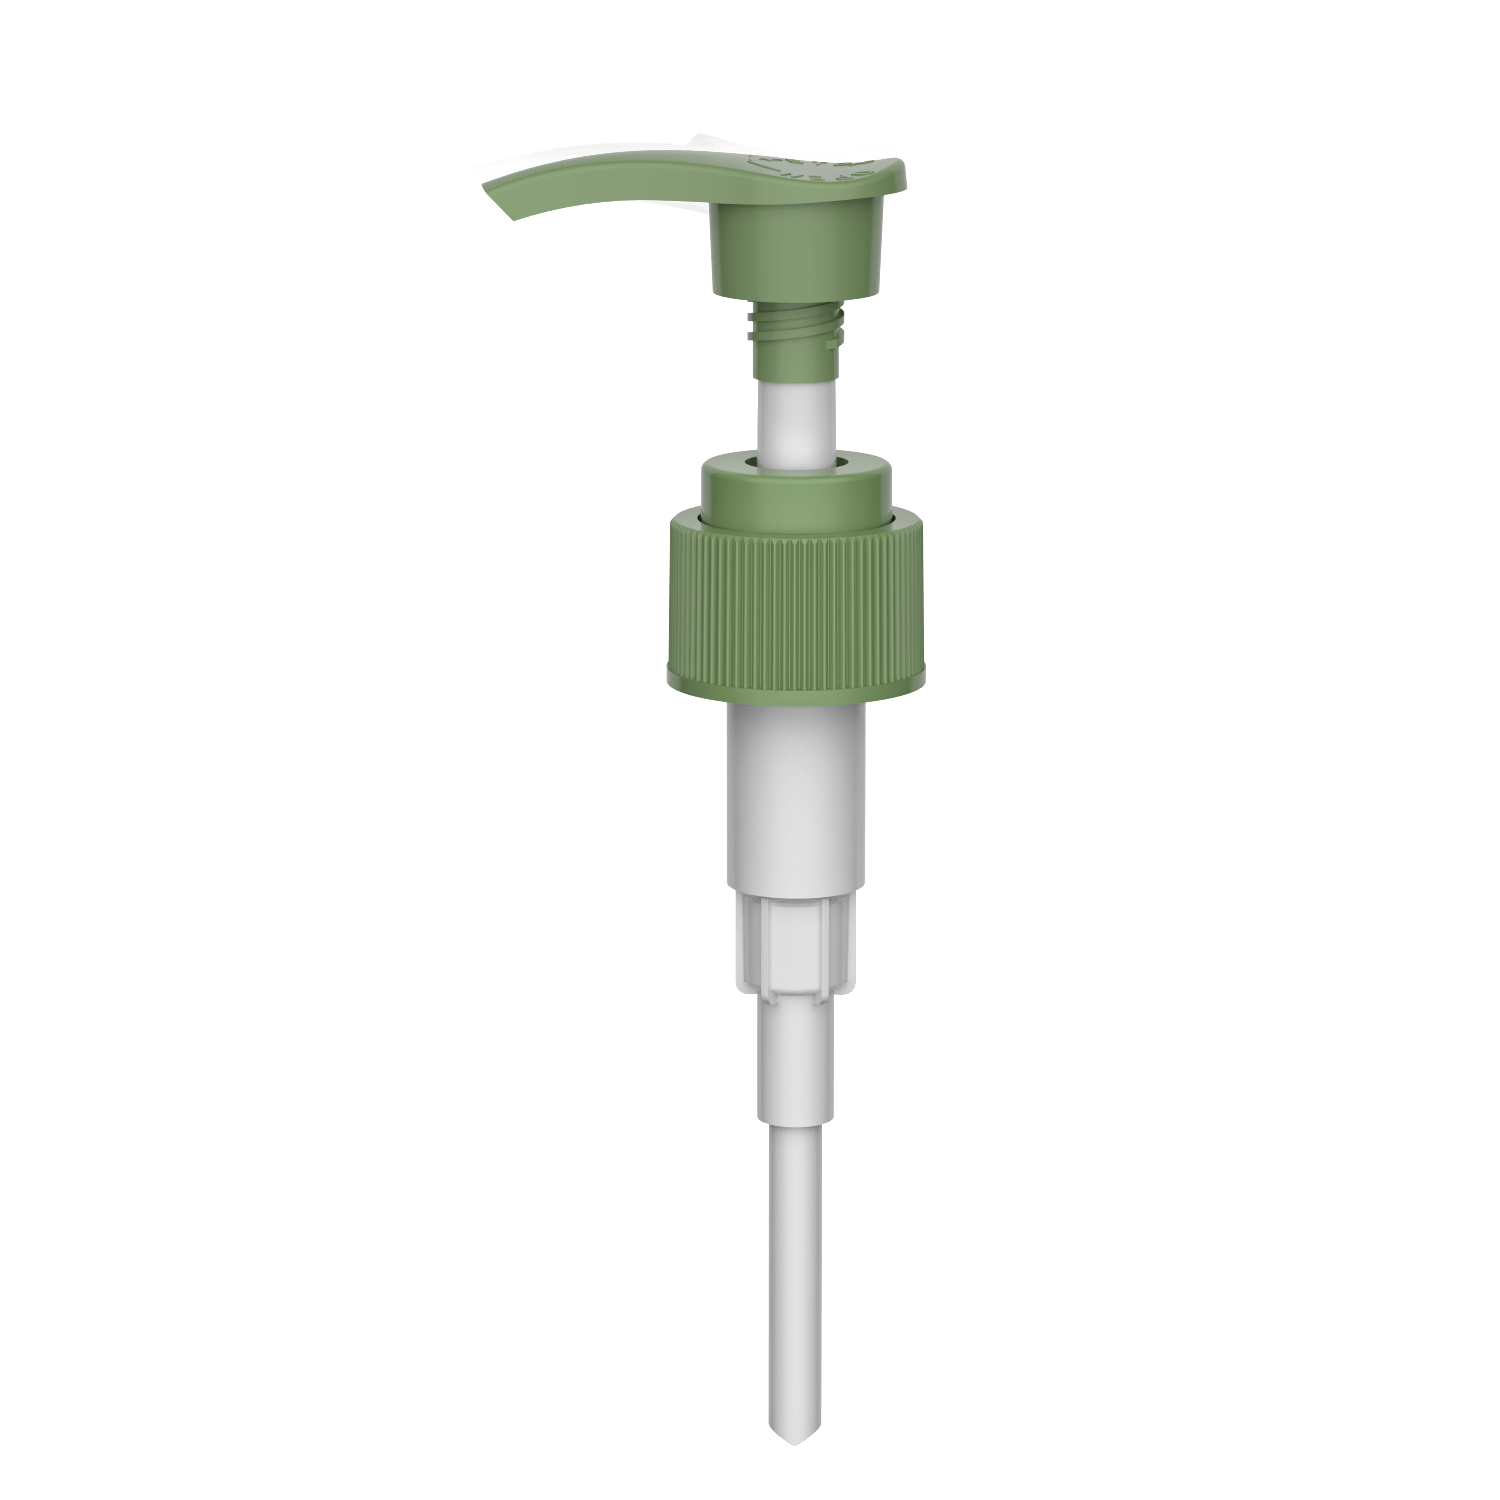 HD-606E 24/410 Schraube Handseife Pumpe Verriegelung Shampoo-Spender 2.0-2.2CC Lotion Pumpe